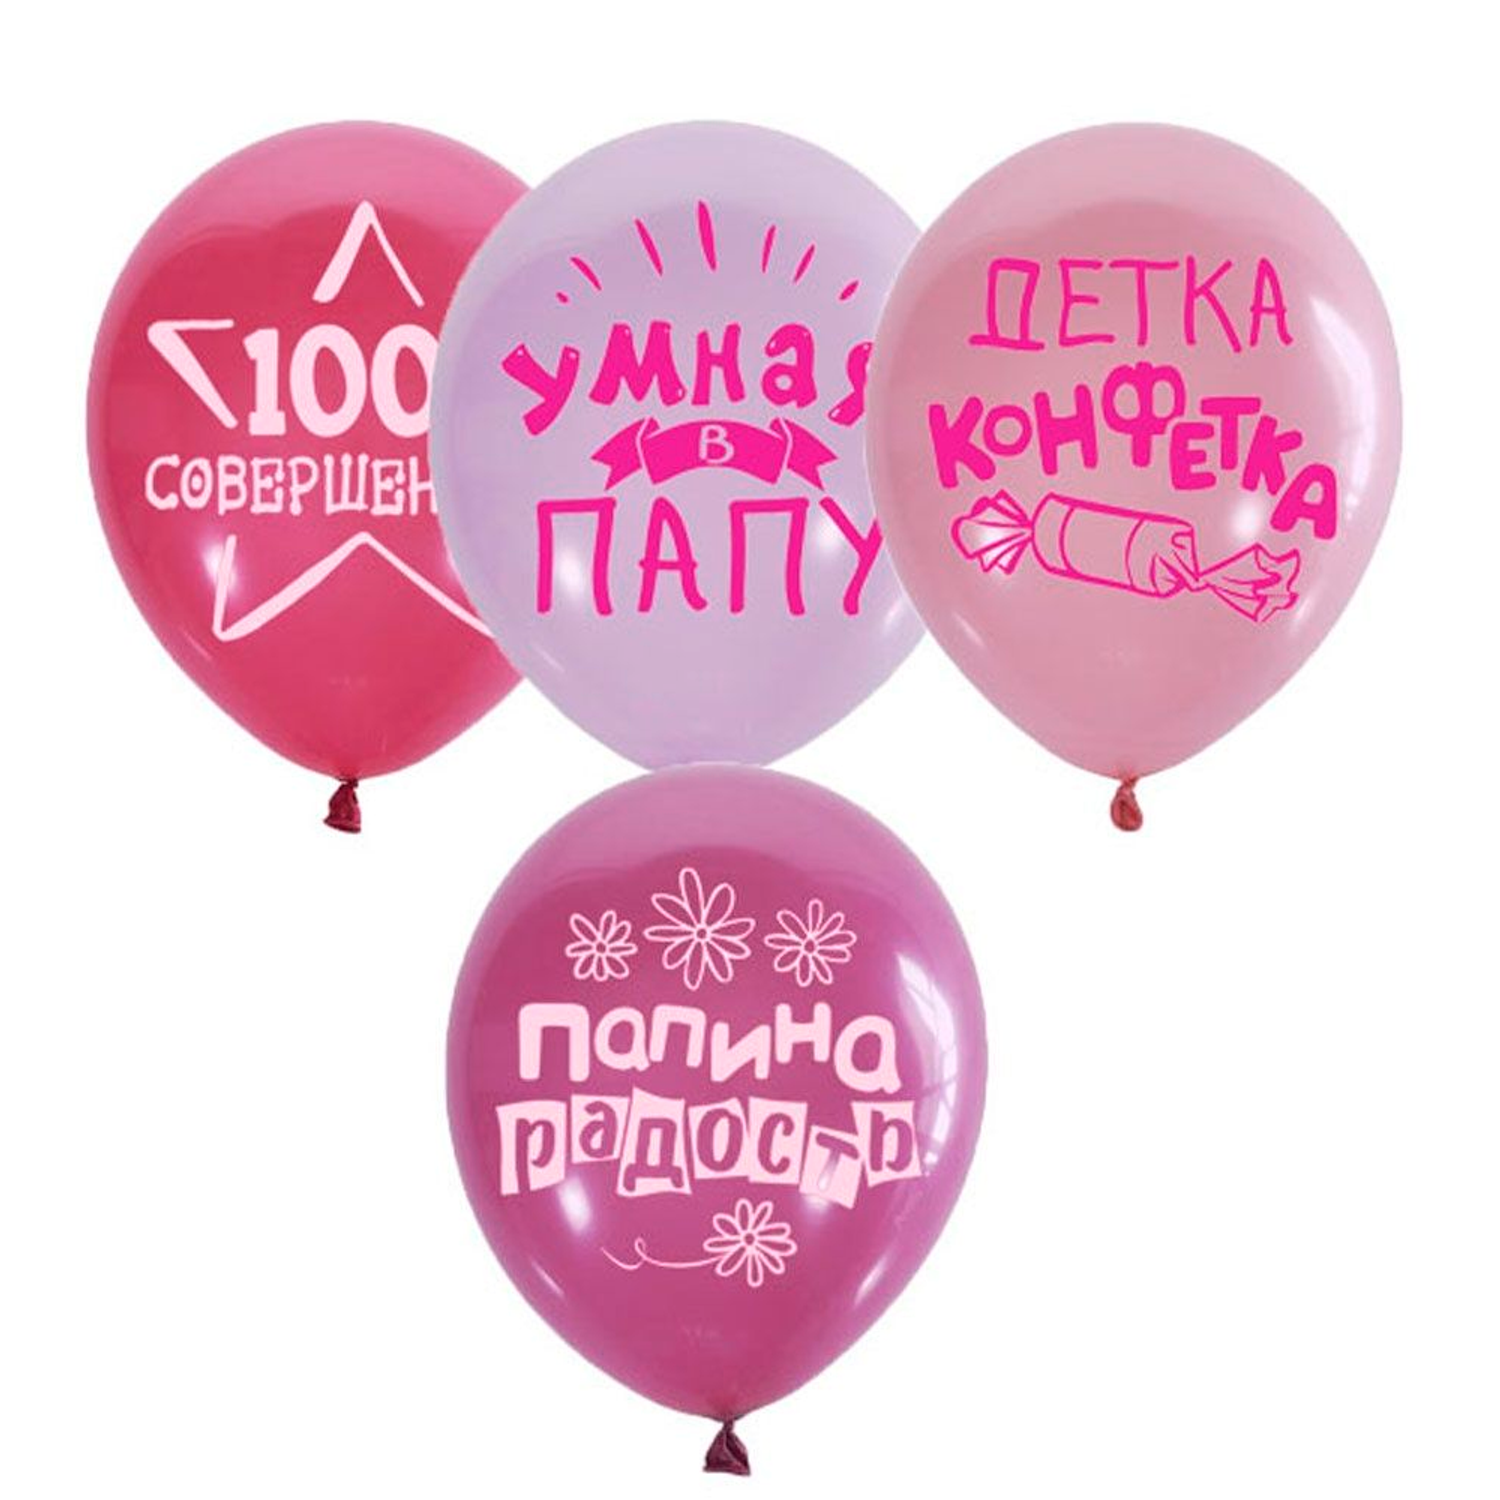 Воздушные шары Riota шуточные с приколами для девочки 15 шт - фото 3